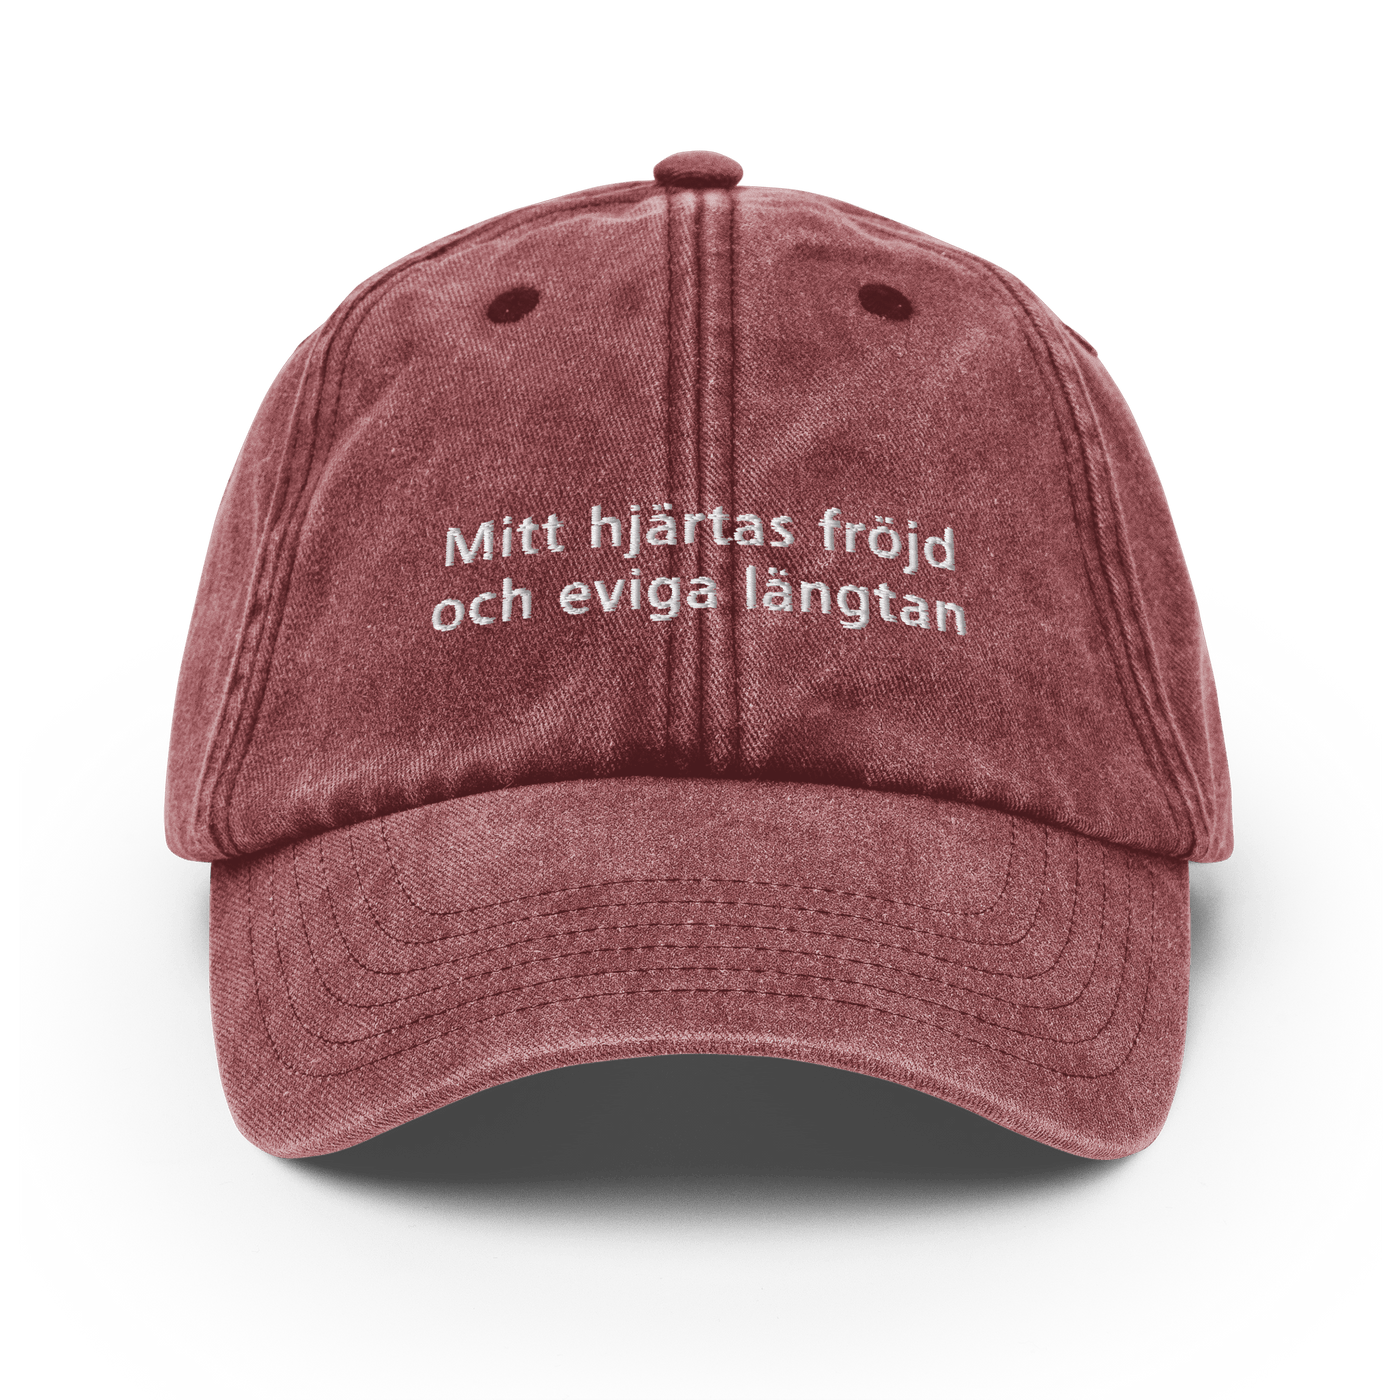 Mitt hjärtas fröjd och eviga längtan Vintage Hat - Vintage Red - - Just Another Cap Store